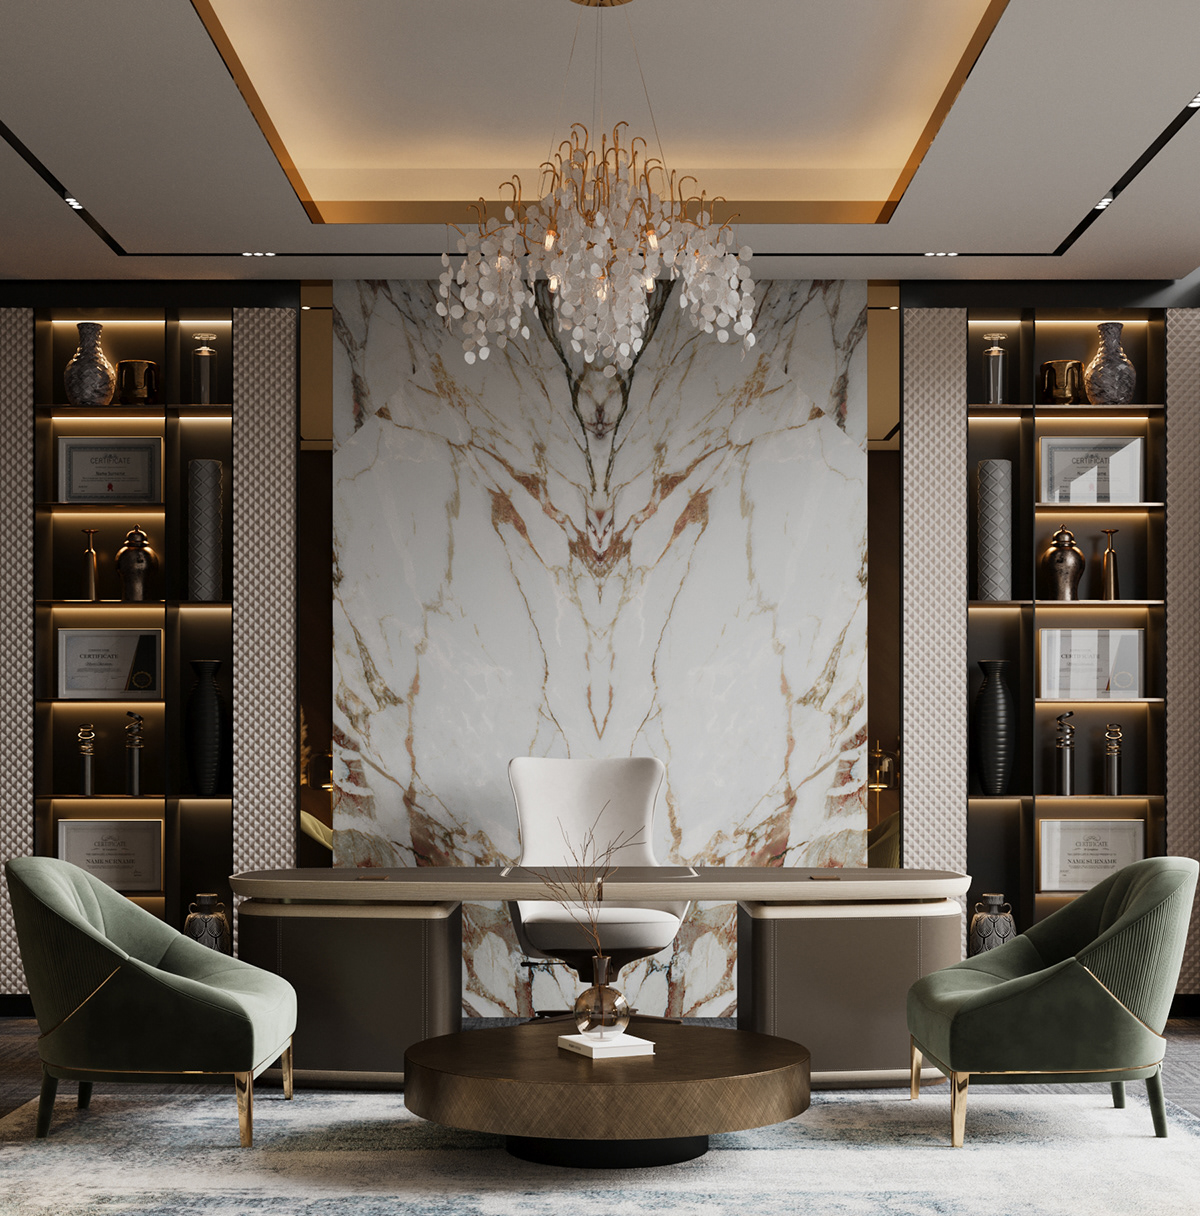 Phong cách thiết kế Luxury sang trọng, quyền lực với biến tấu nổi bật về đồ nội thất trong phòng làm việc